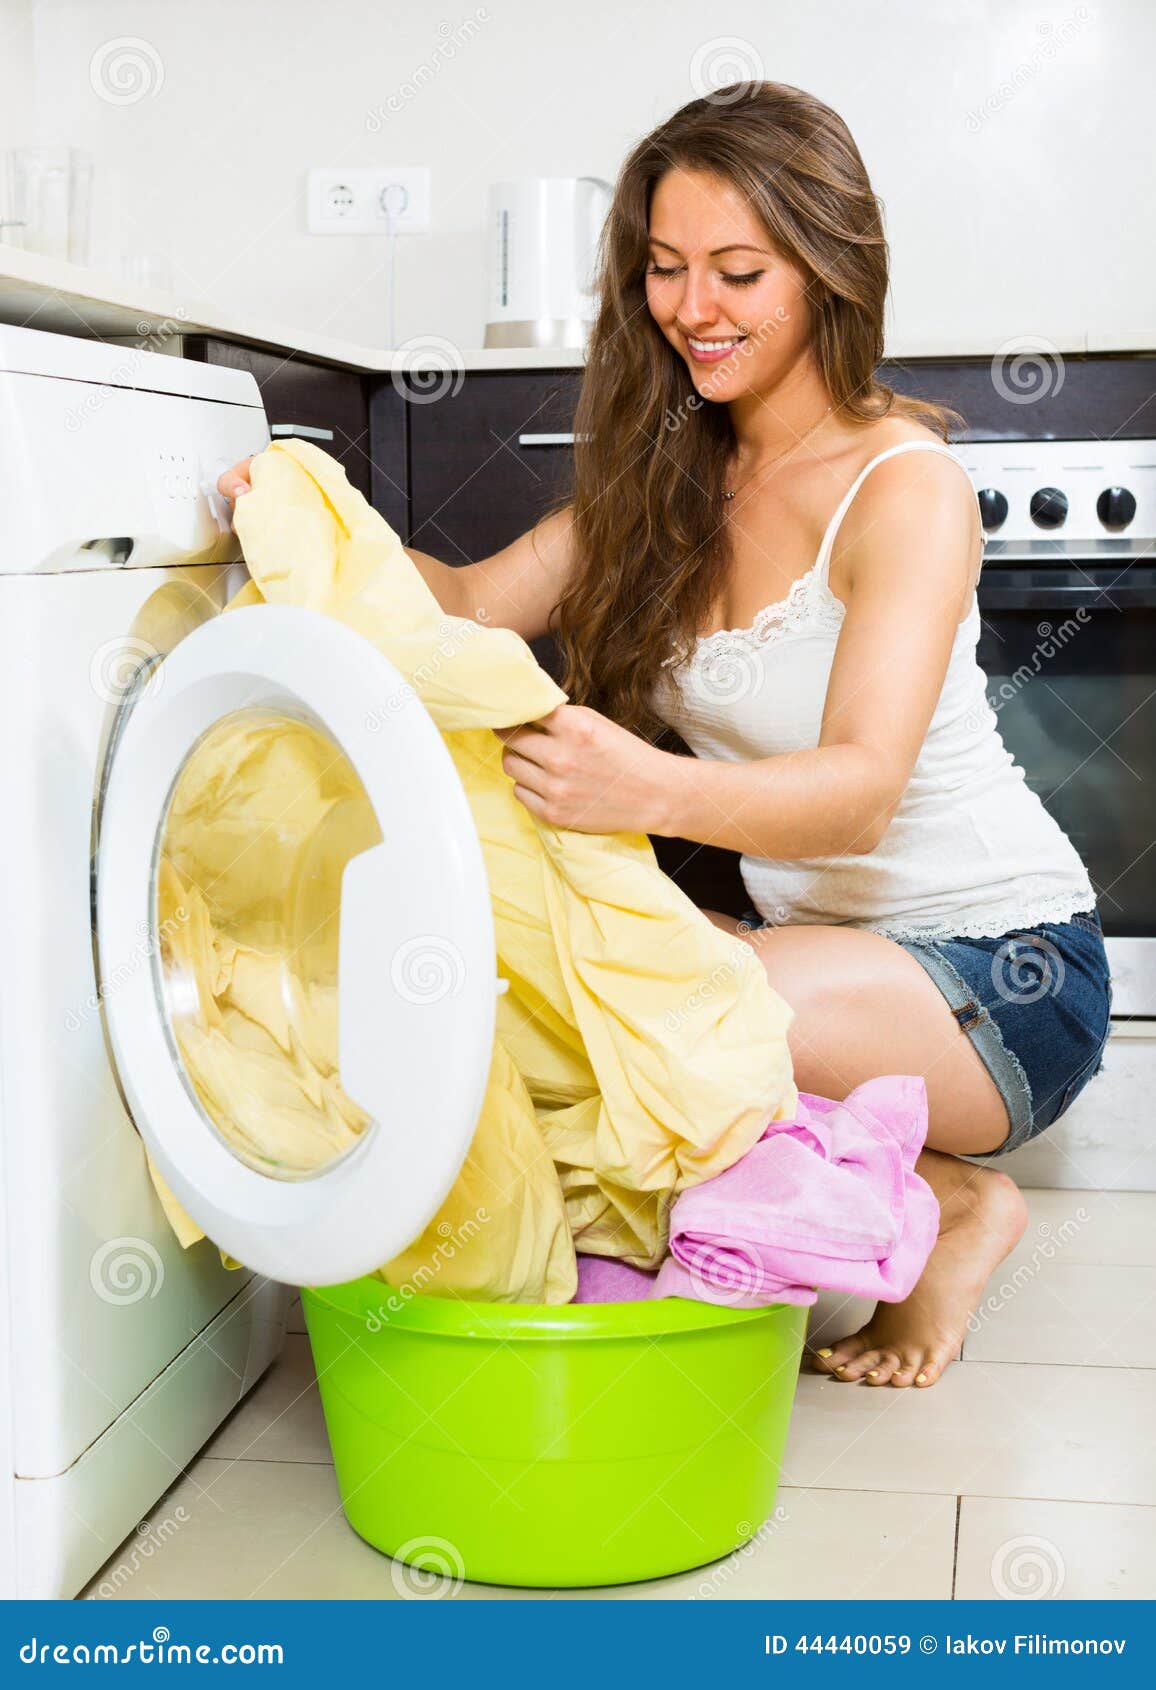 在洗衣机的微笑的少妇洗涤的衣裳 库存图片. 图片 包括有 户内, 差事, 房子, 主妇, 设备, 妇女, 女孩 - 42566813